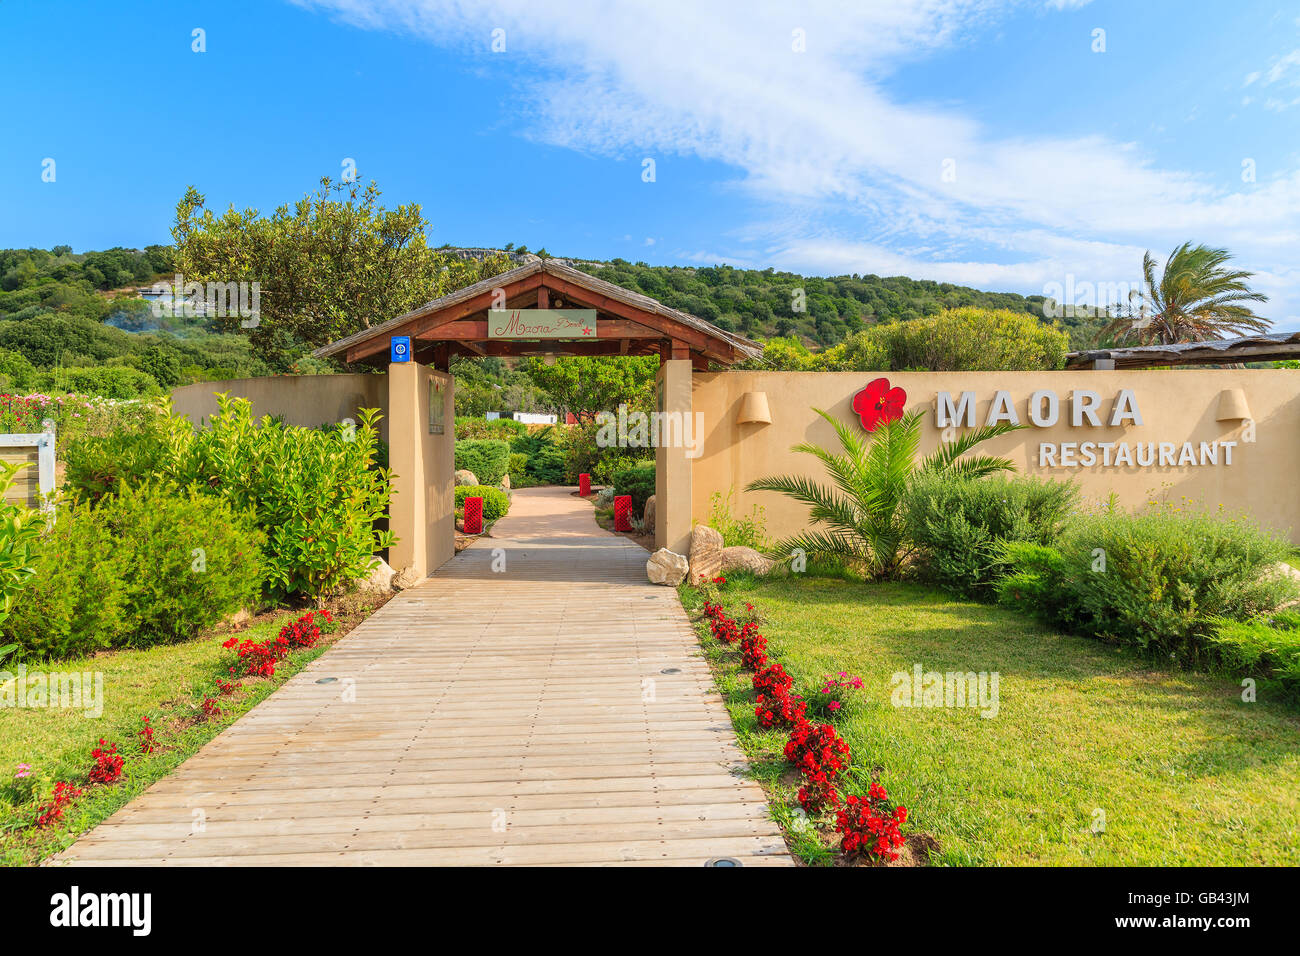 La isla de Córcega, Francia - 23 Jun, 2015: puerta de entrada al restaurante de Santa Manza beach, que está situado en la parte sur de CDR Foto de stock